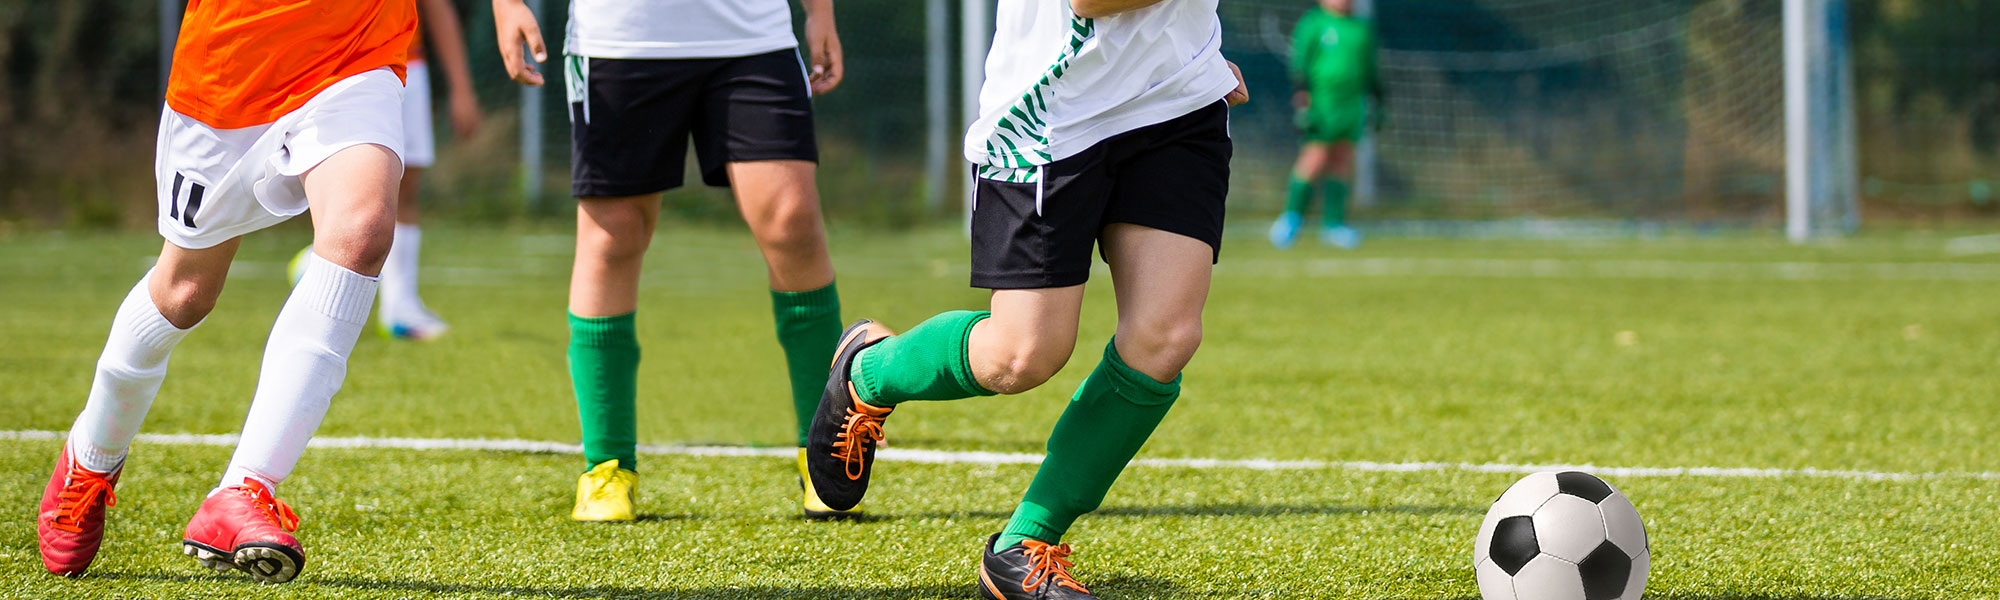 Soccer players running toward a soccer ball